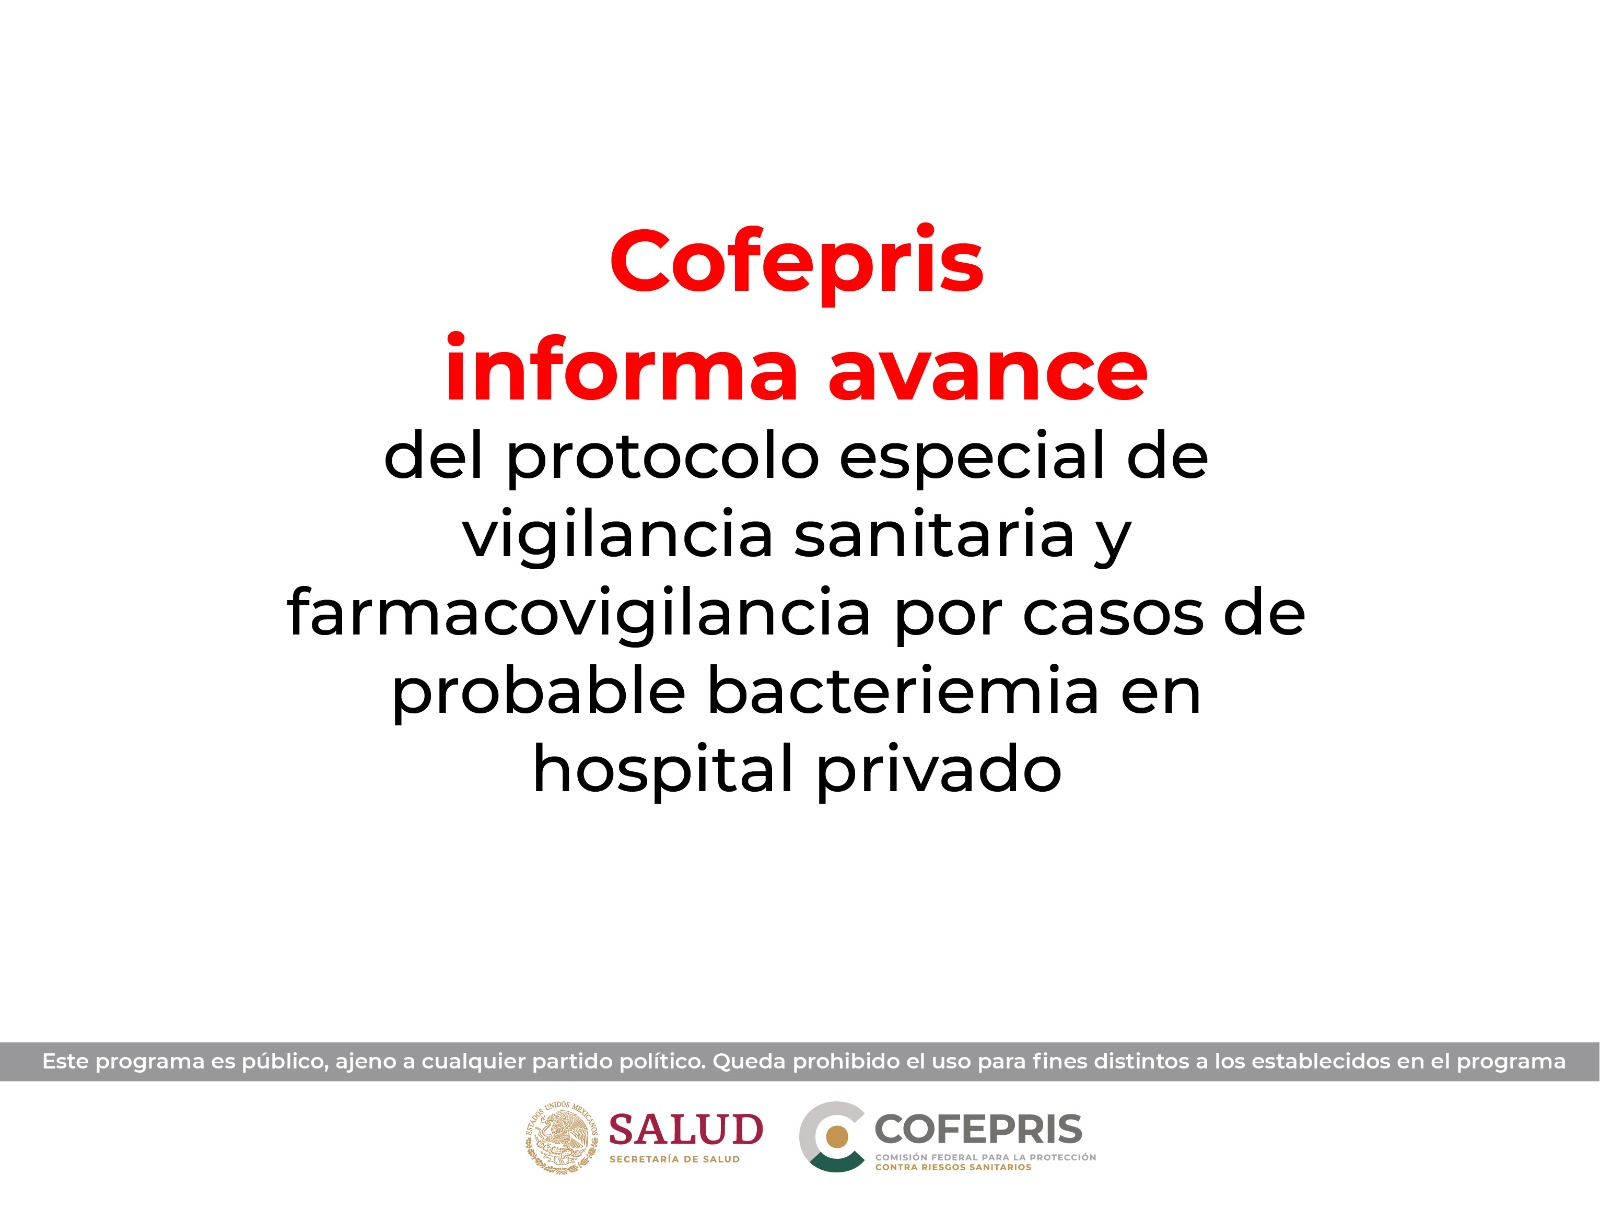 Cofepris informa avance del protocolo especial de vigilancia sanitaria y farmacovigilancia por casos de probable bacteriemia en hospital privado